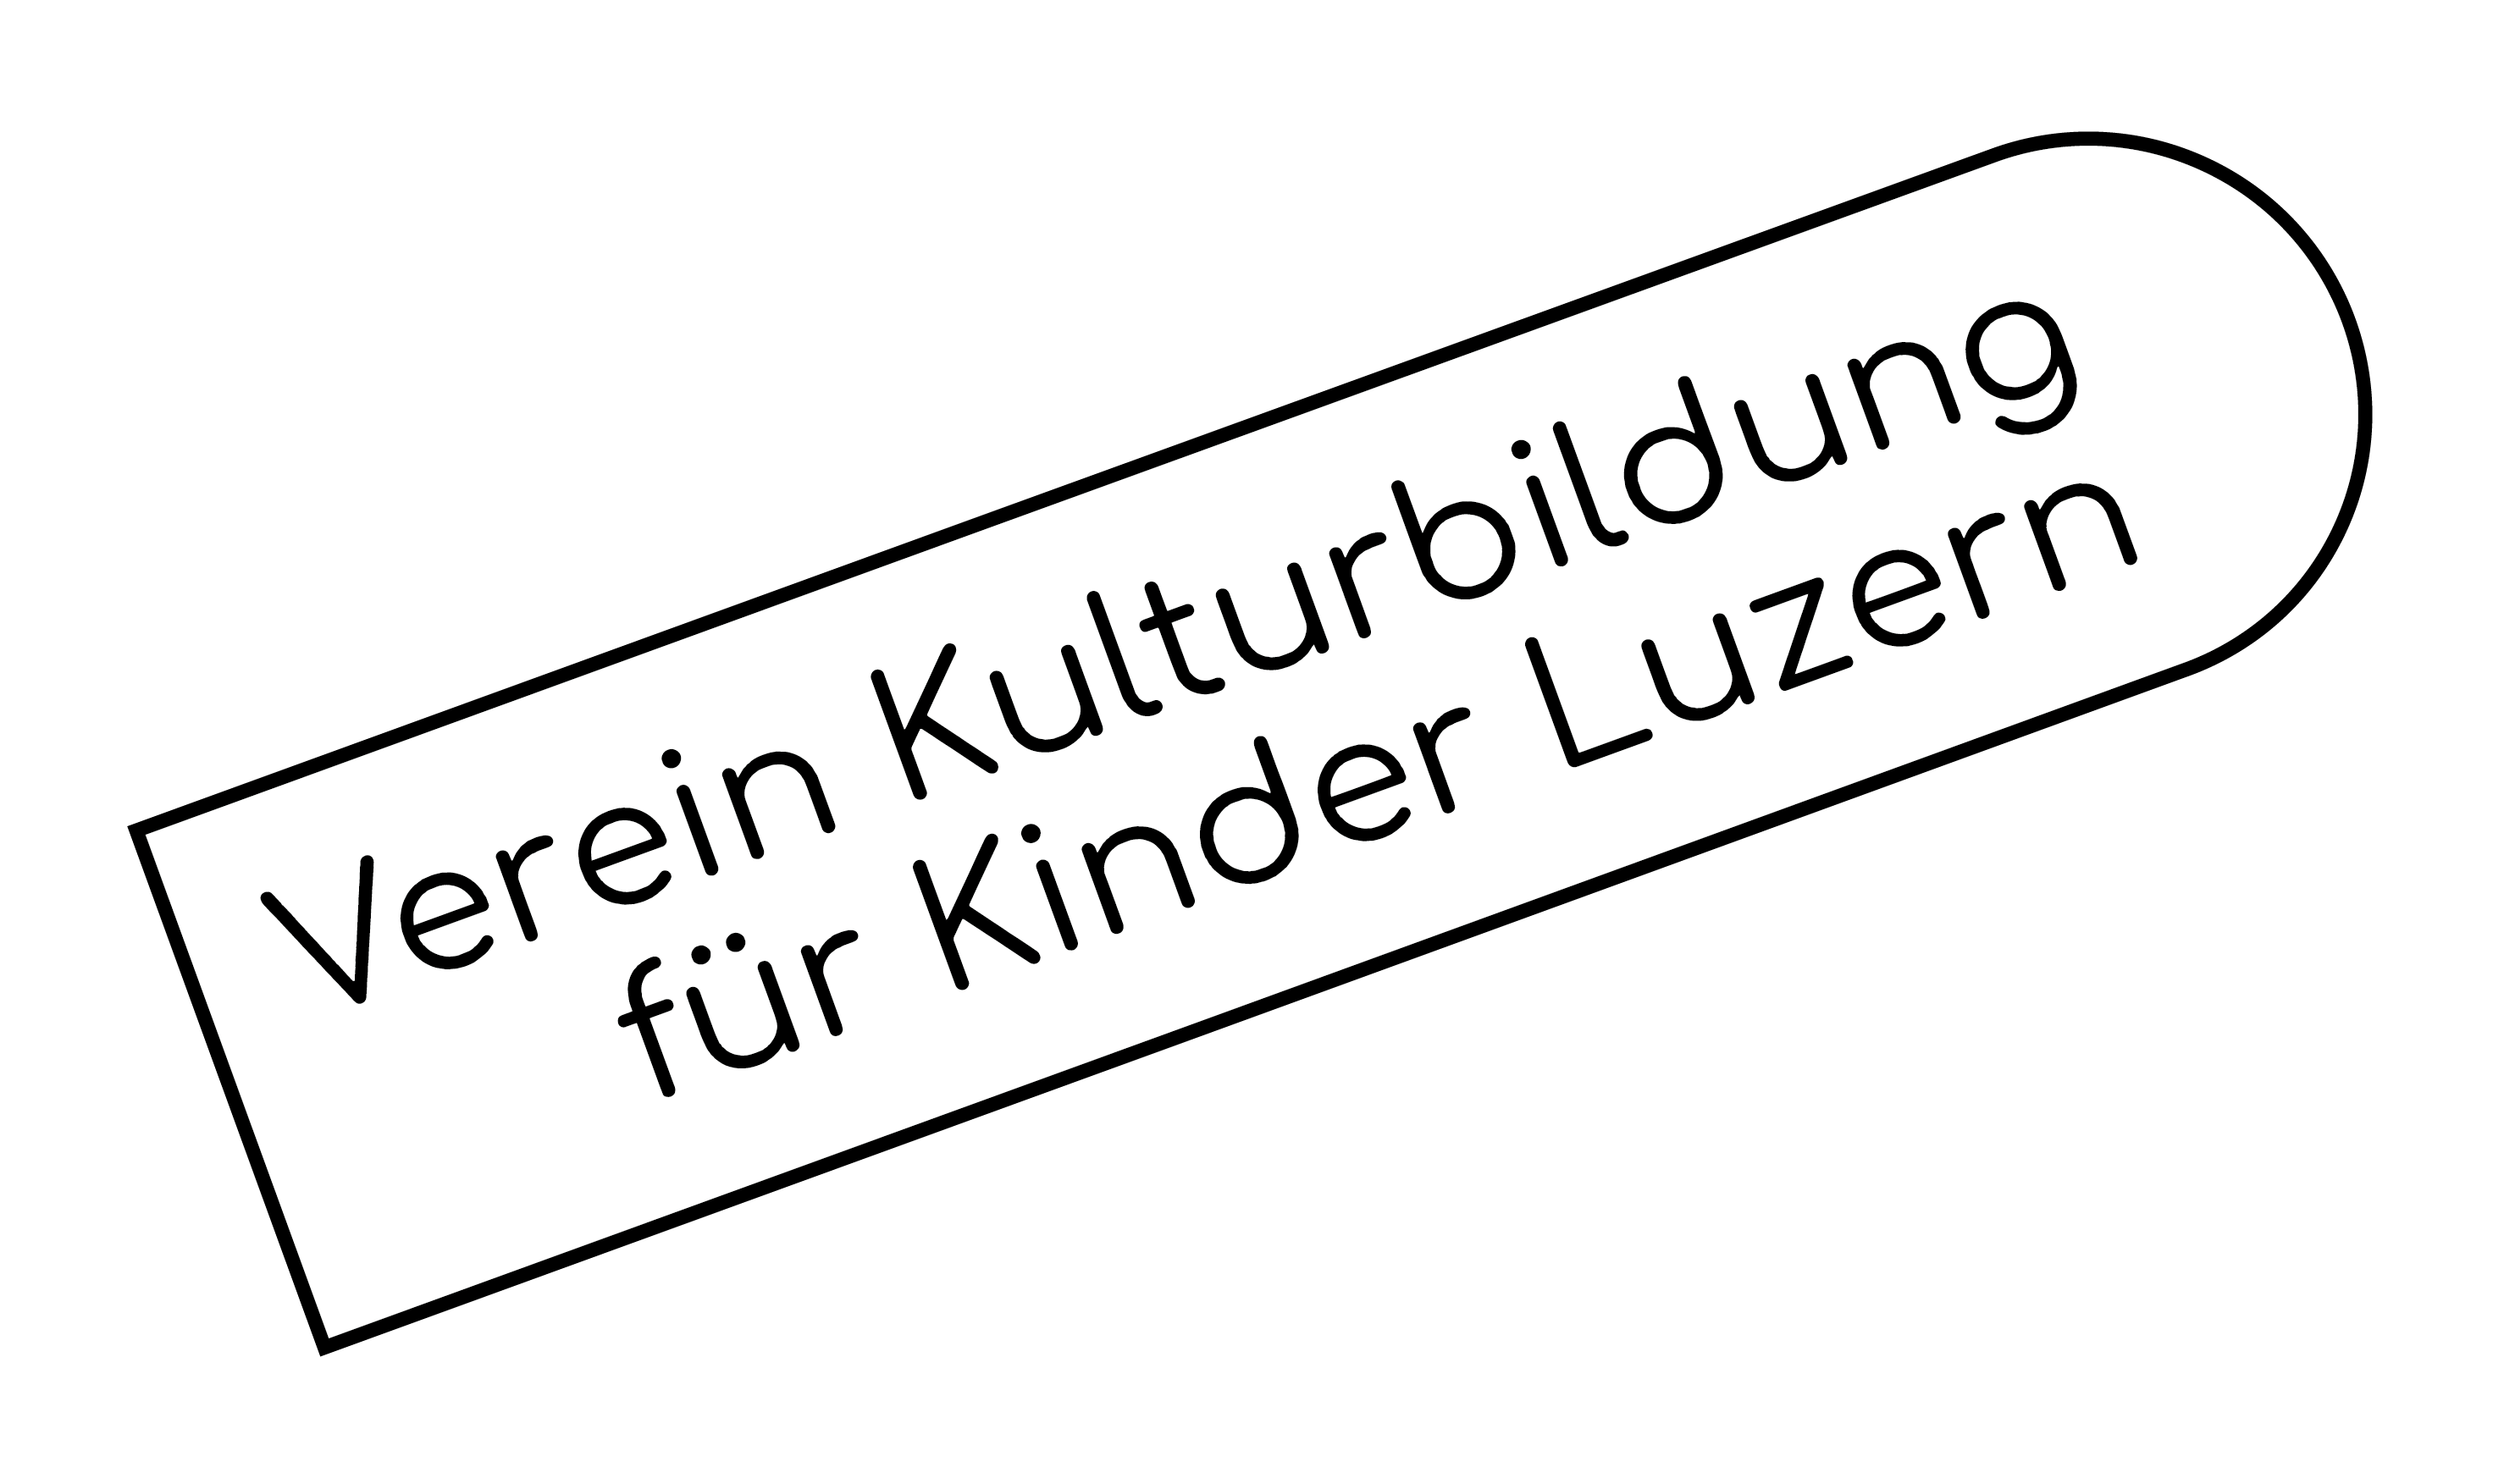 Verein Kulturbildung für Kinder Luzern